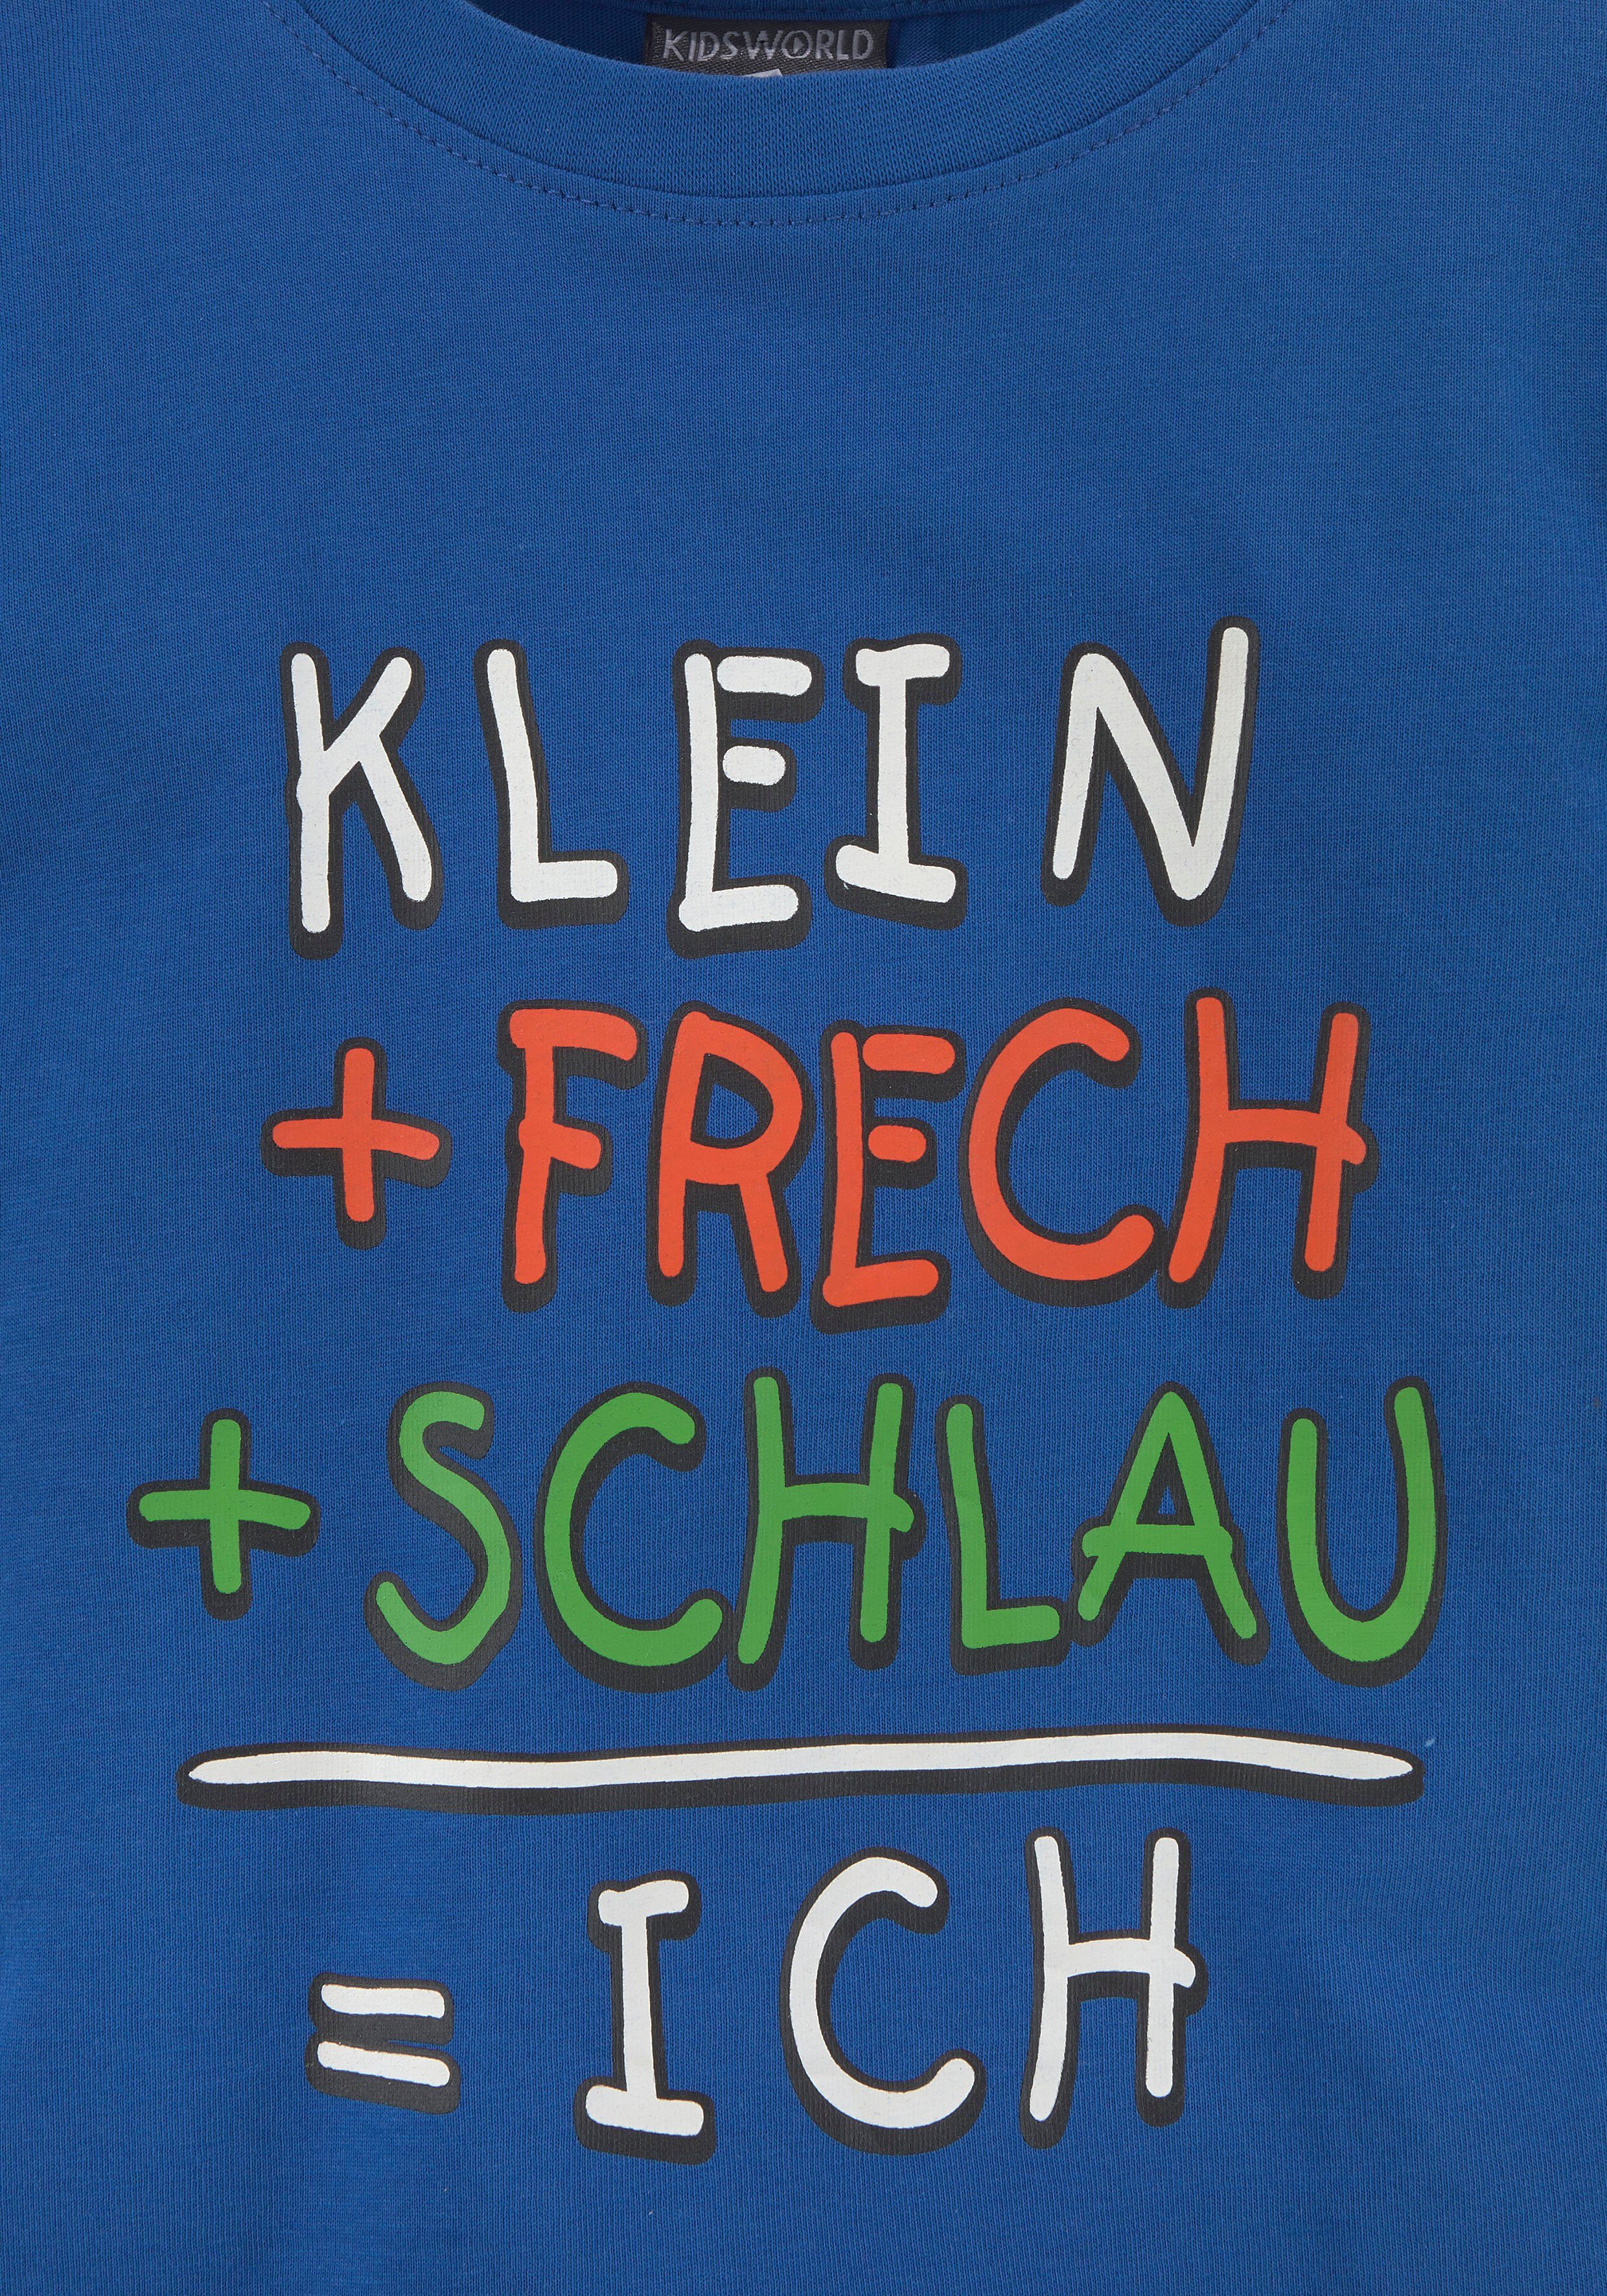 T-Shirt KIDSWORLD KLEIN+FRECH+SCHLAU...